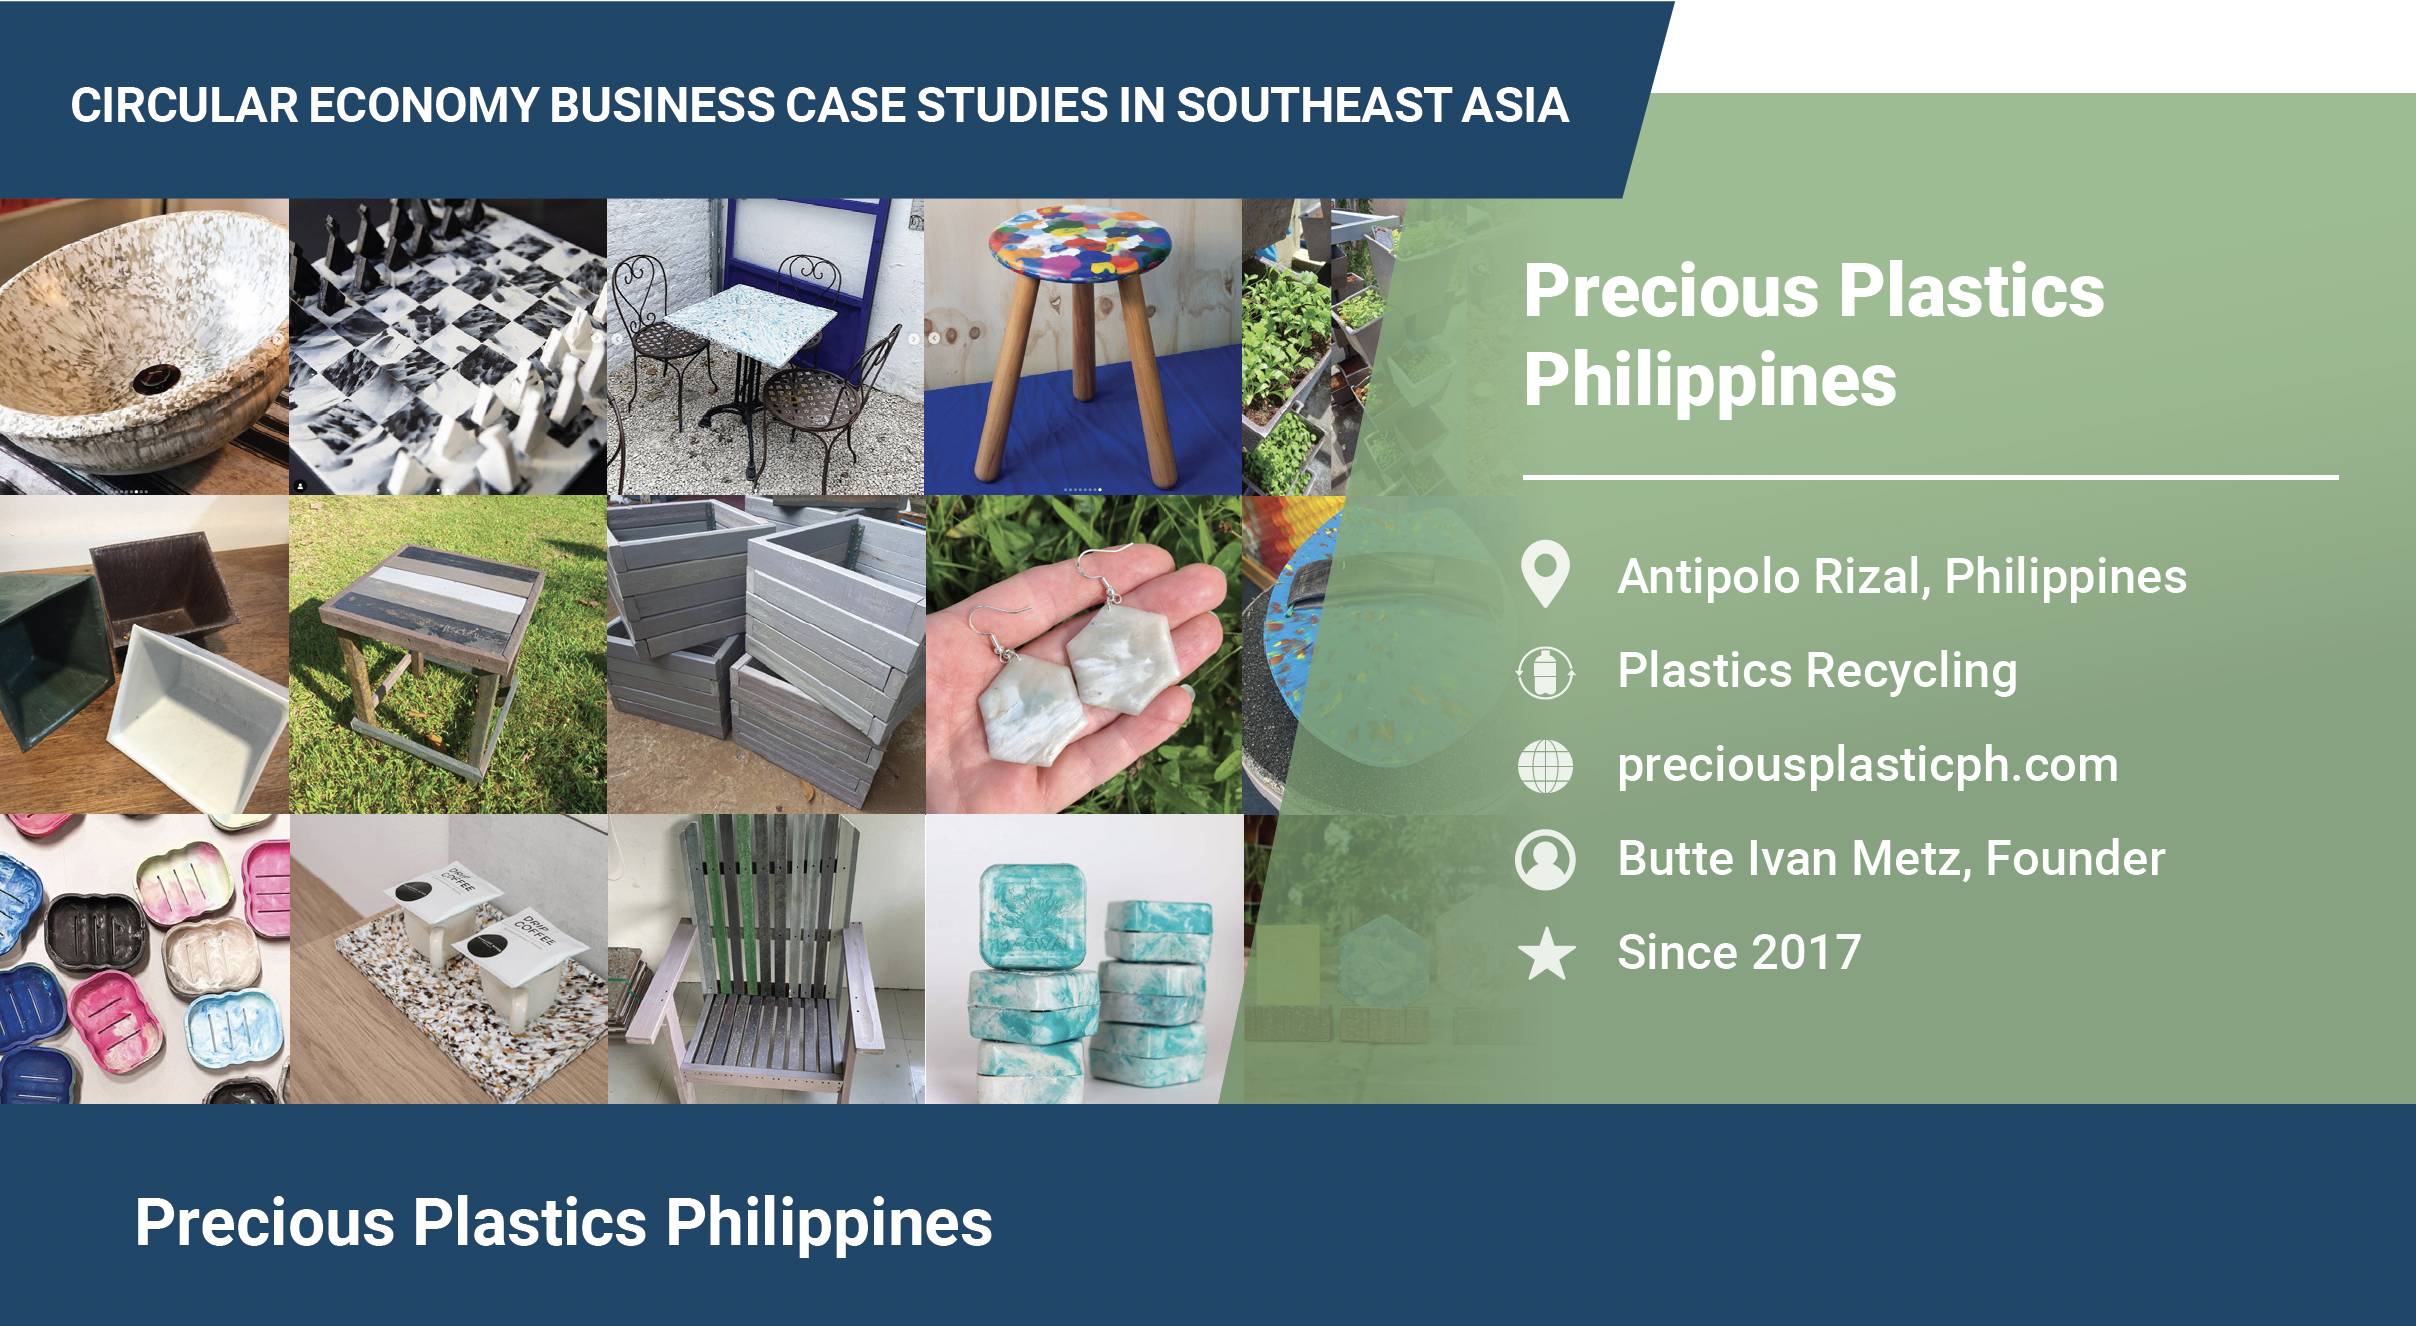 Precious Plastics Philippines